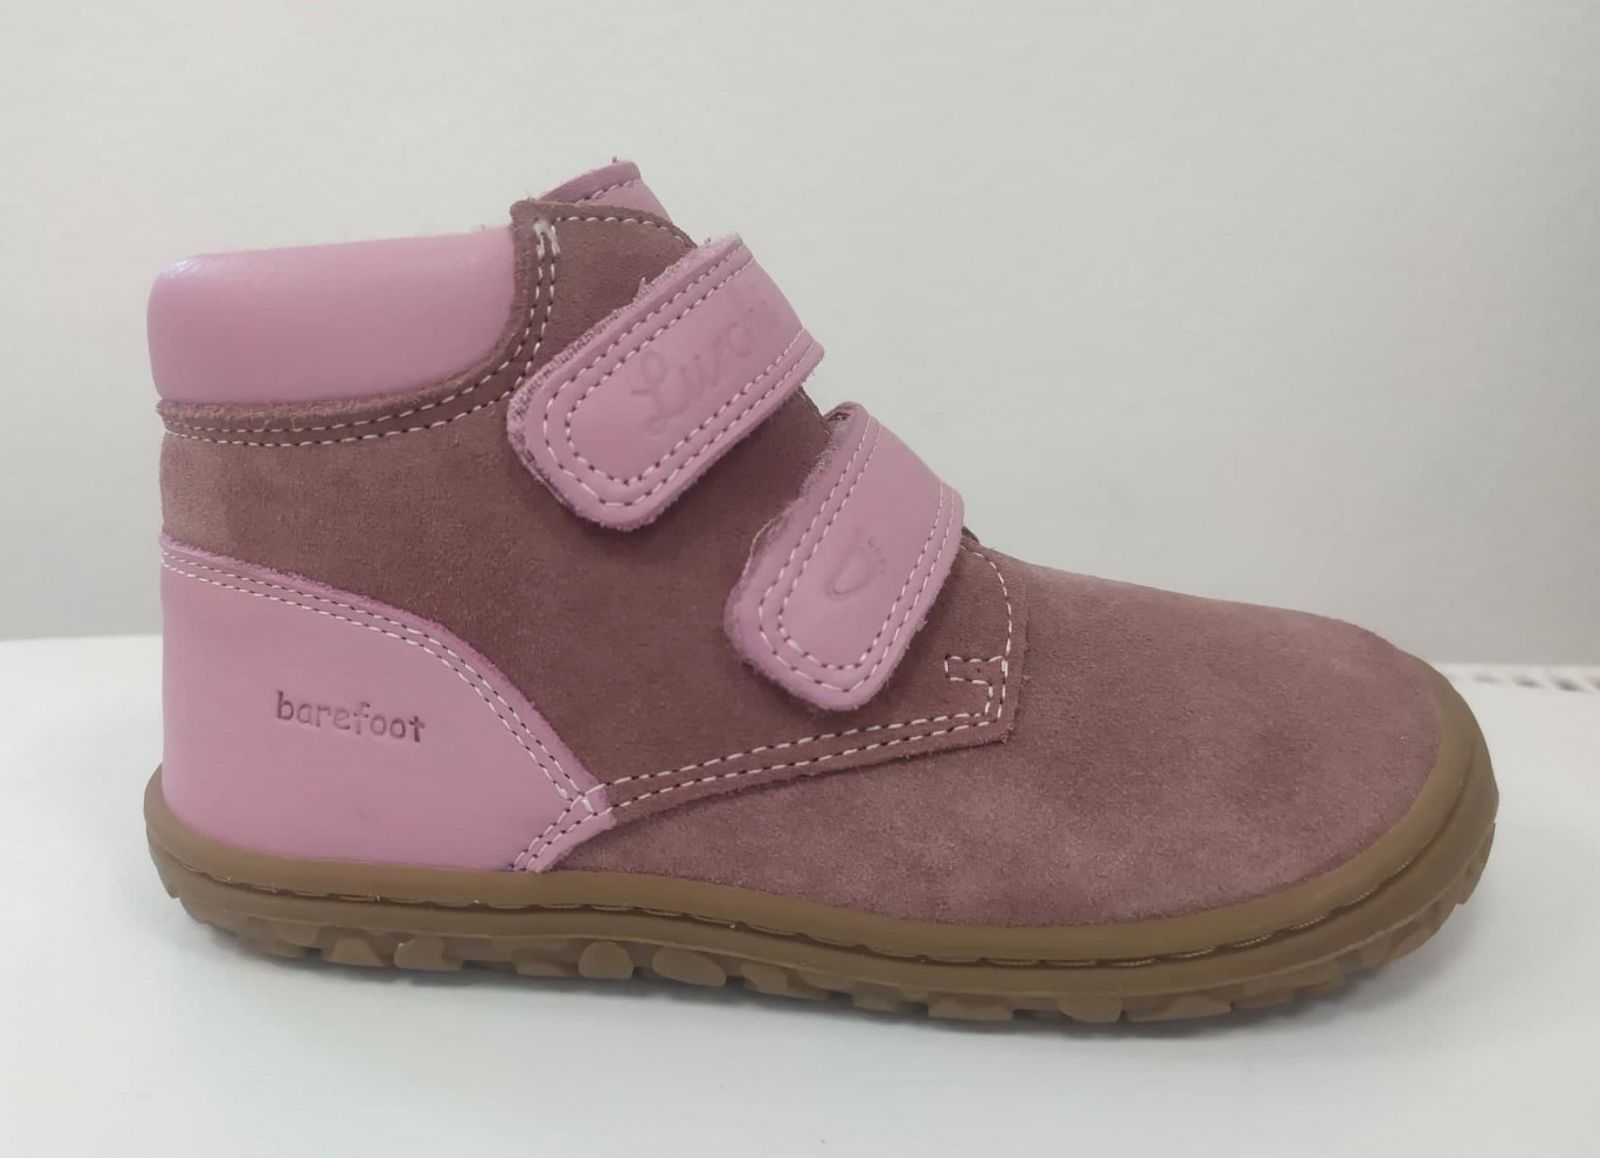 Barefoot Lurchi barefoot boty - Nino nappa rosa bosá